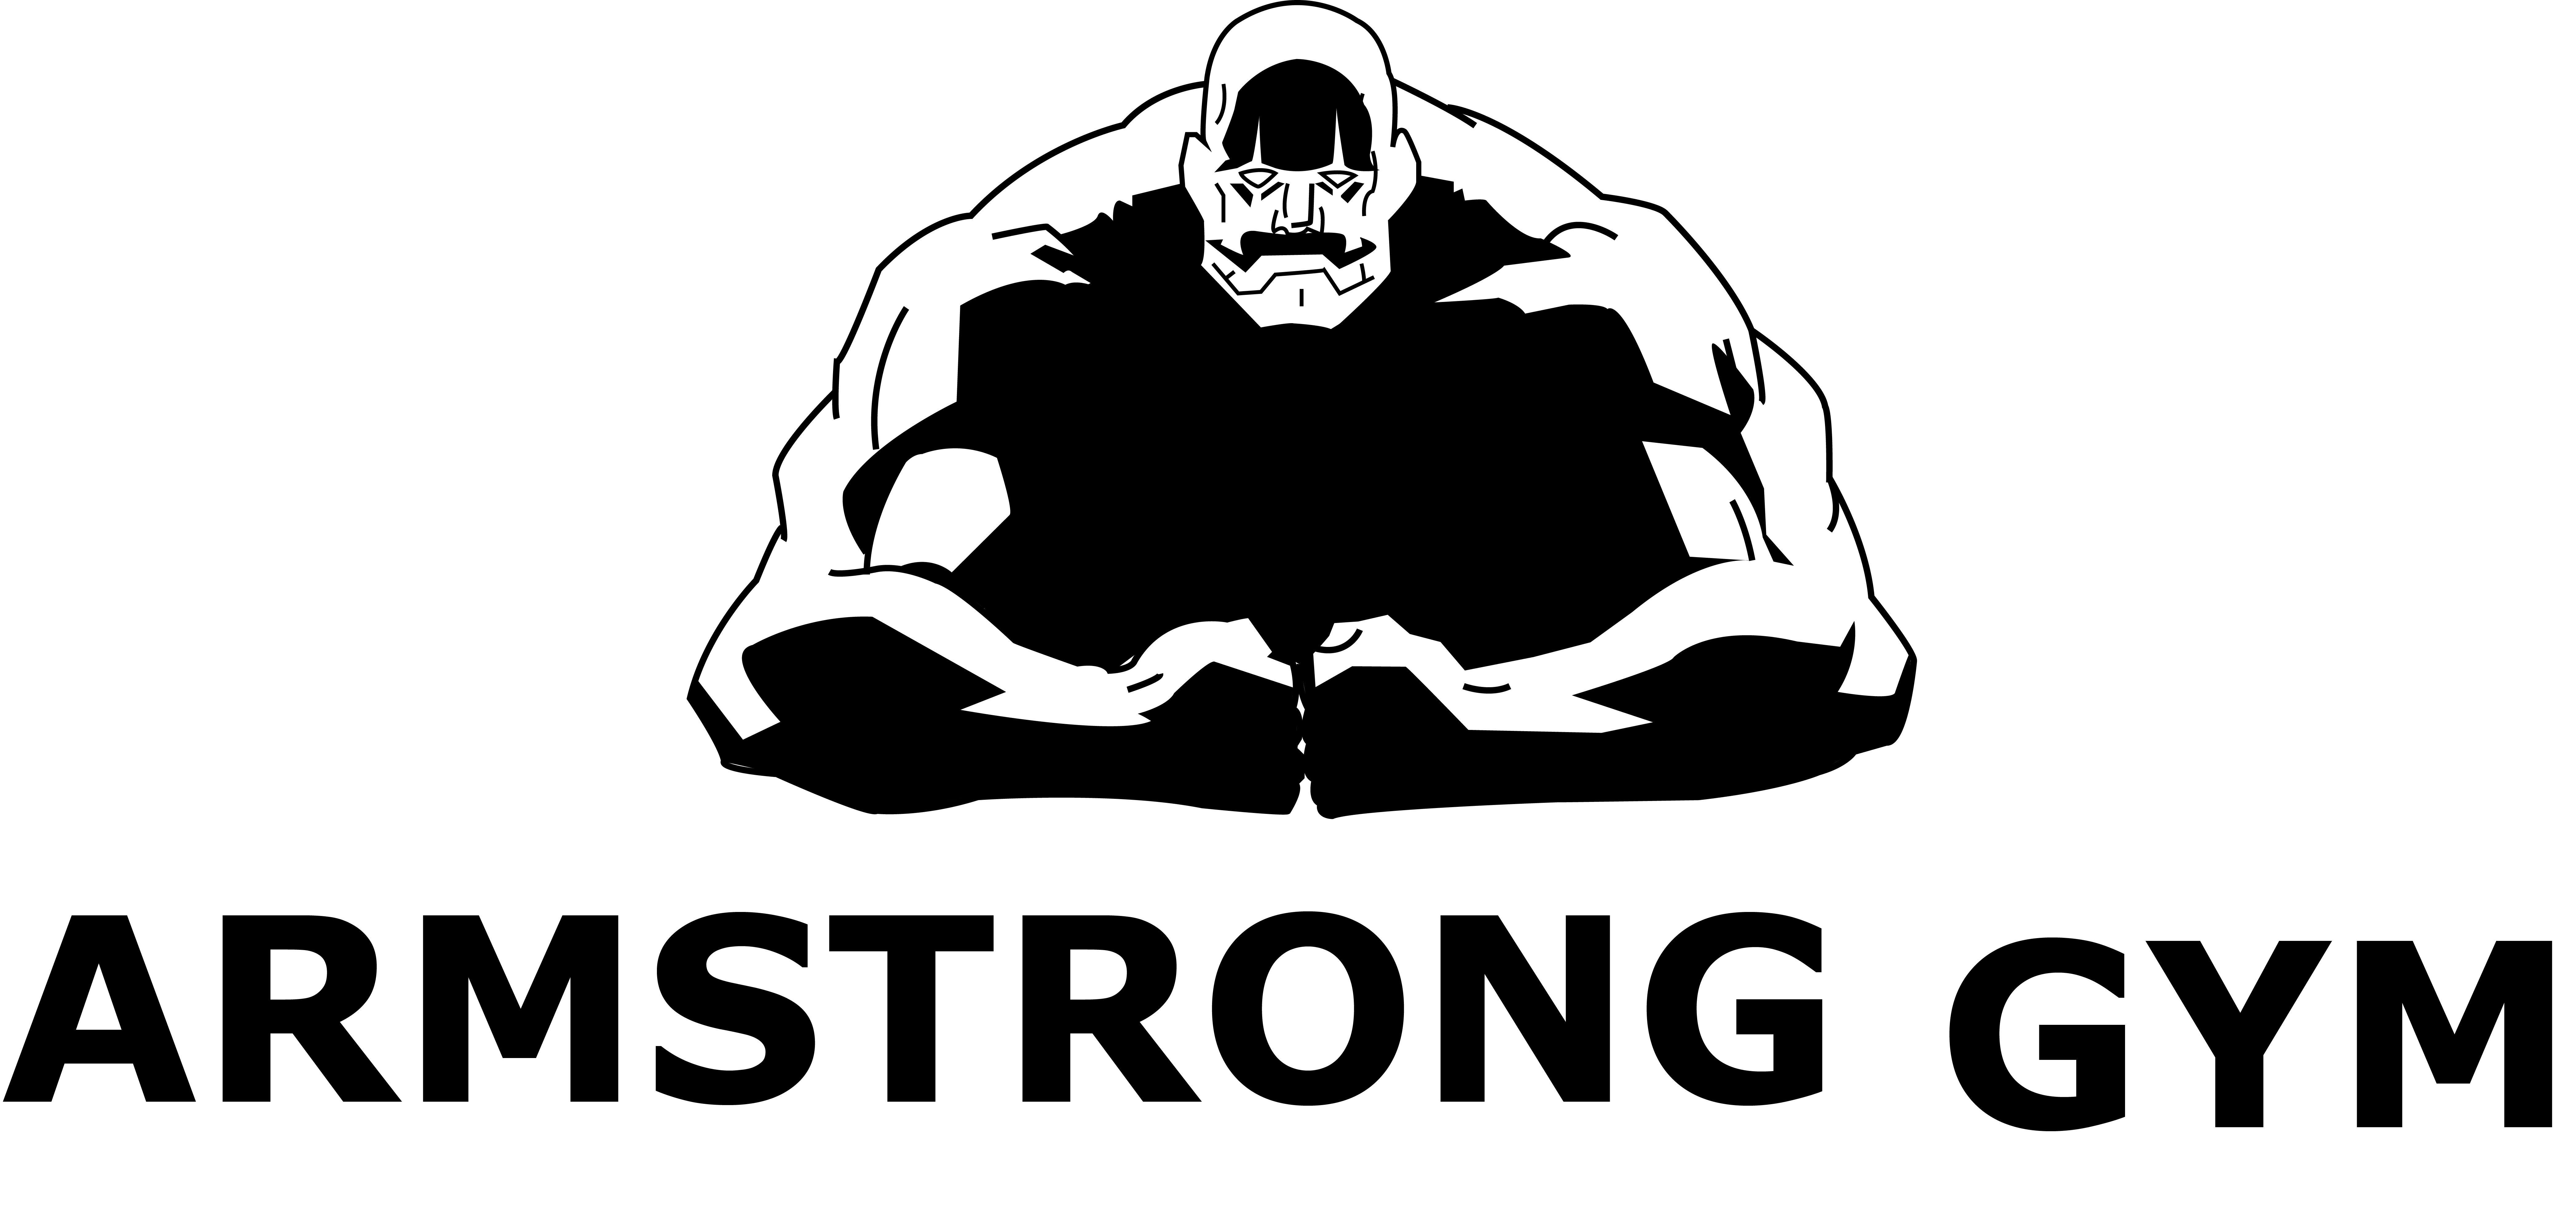 Armstrong Logo - Armstrong gym – Logo | Henrik Hjelle